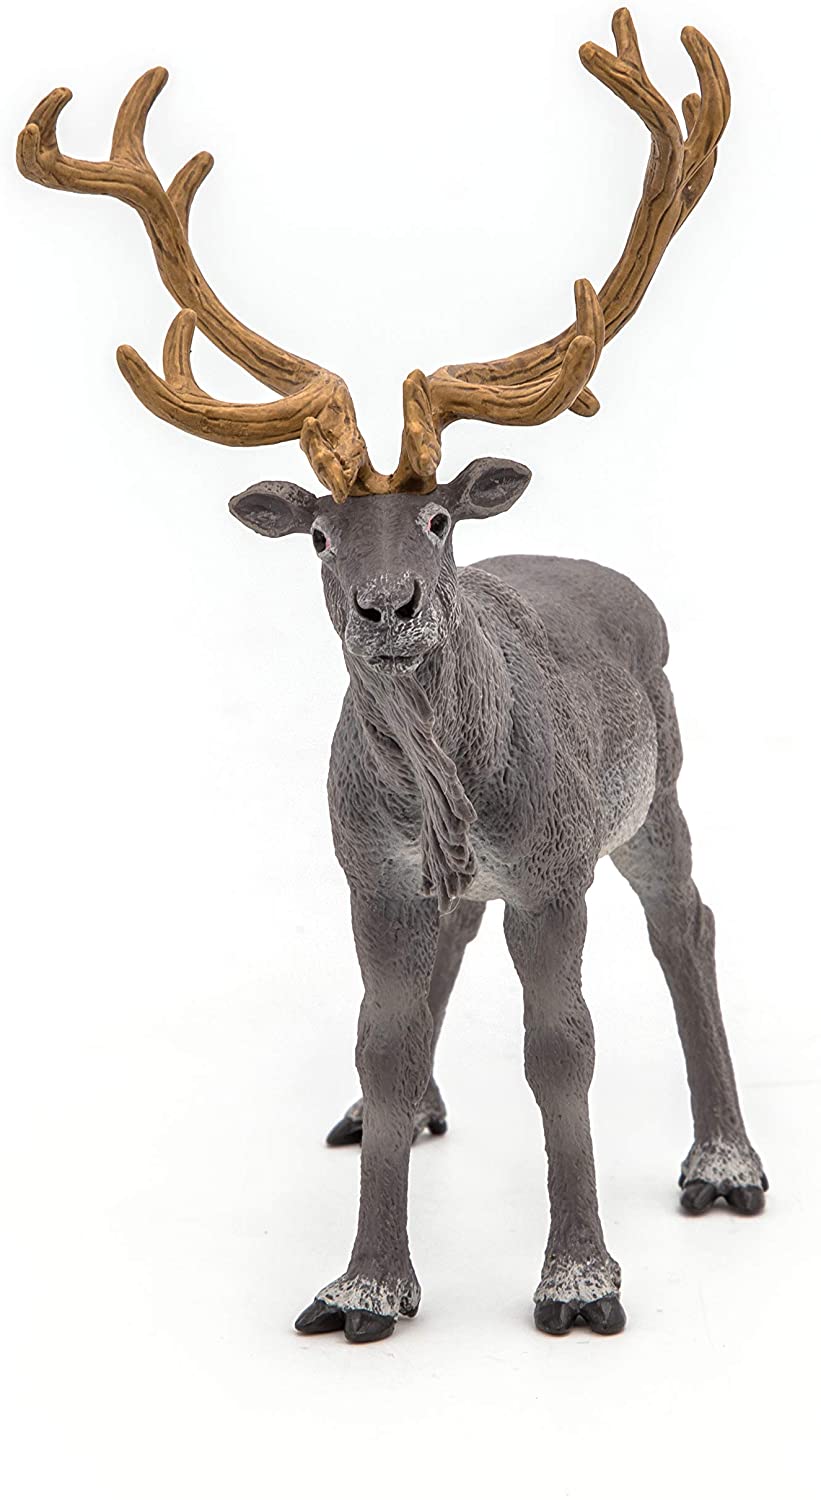 Details about   Large Northern Deer Reindeer Action Figure Toy Rangifer Caribou Figure 